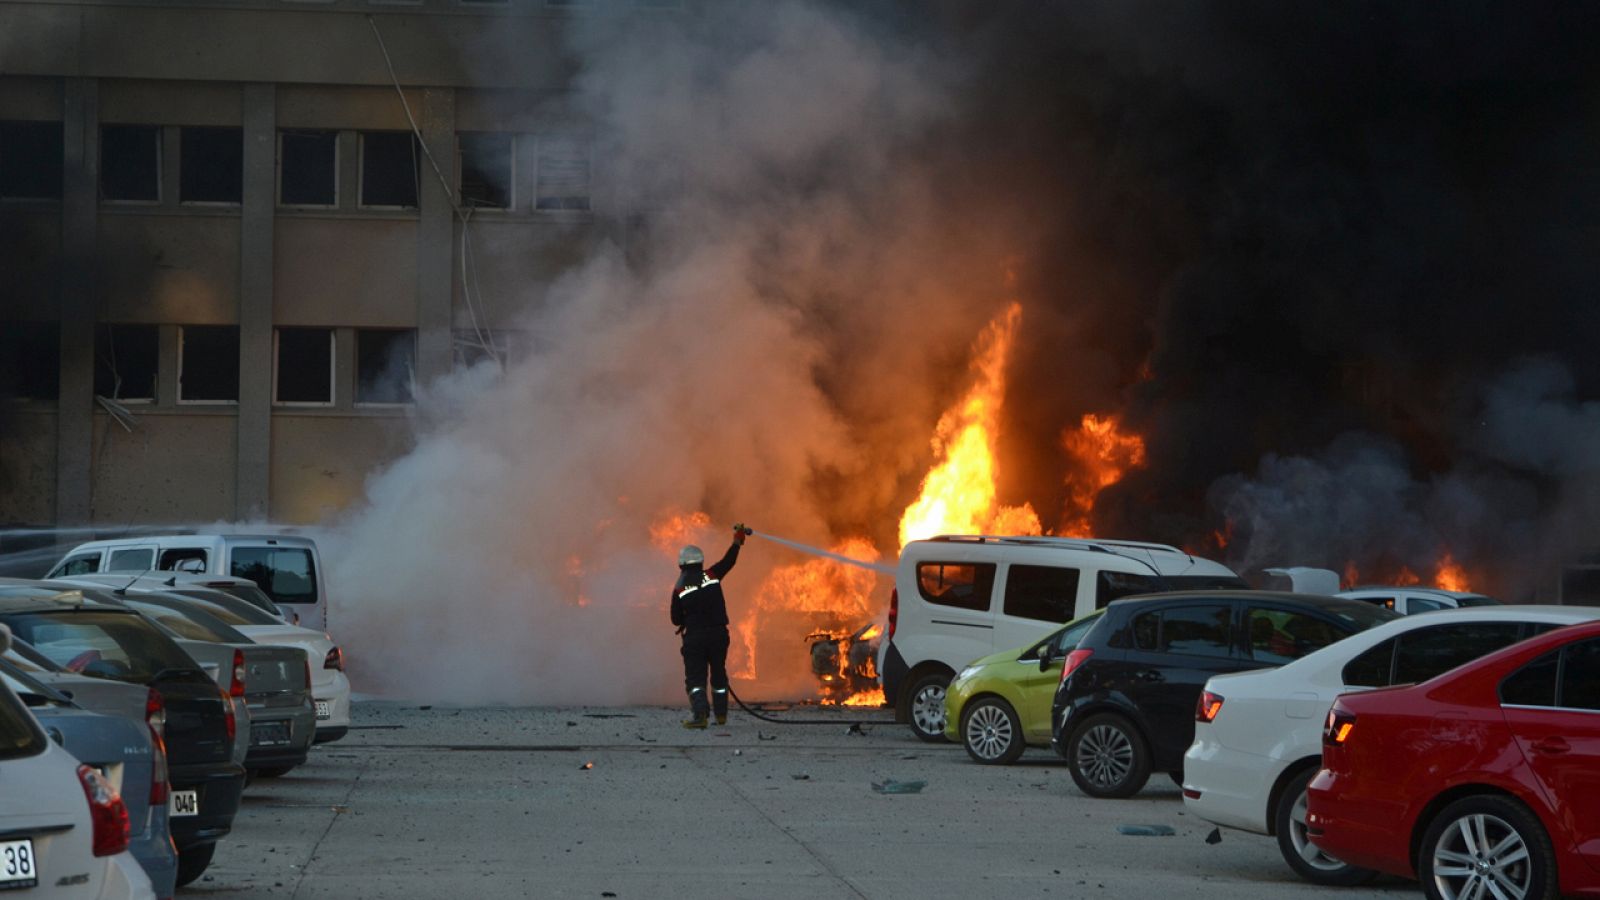 Bomberos extinguen el fuego tras el atentado con coche bomba en la ciudad turca de Adana